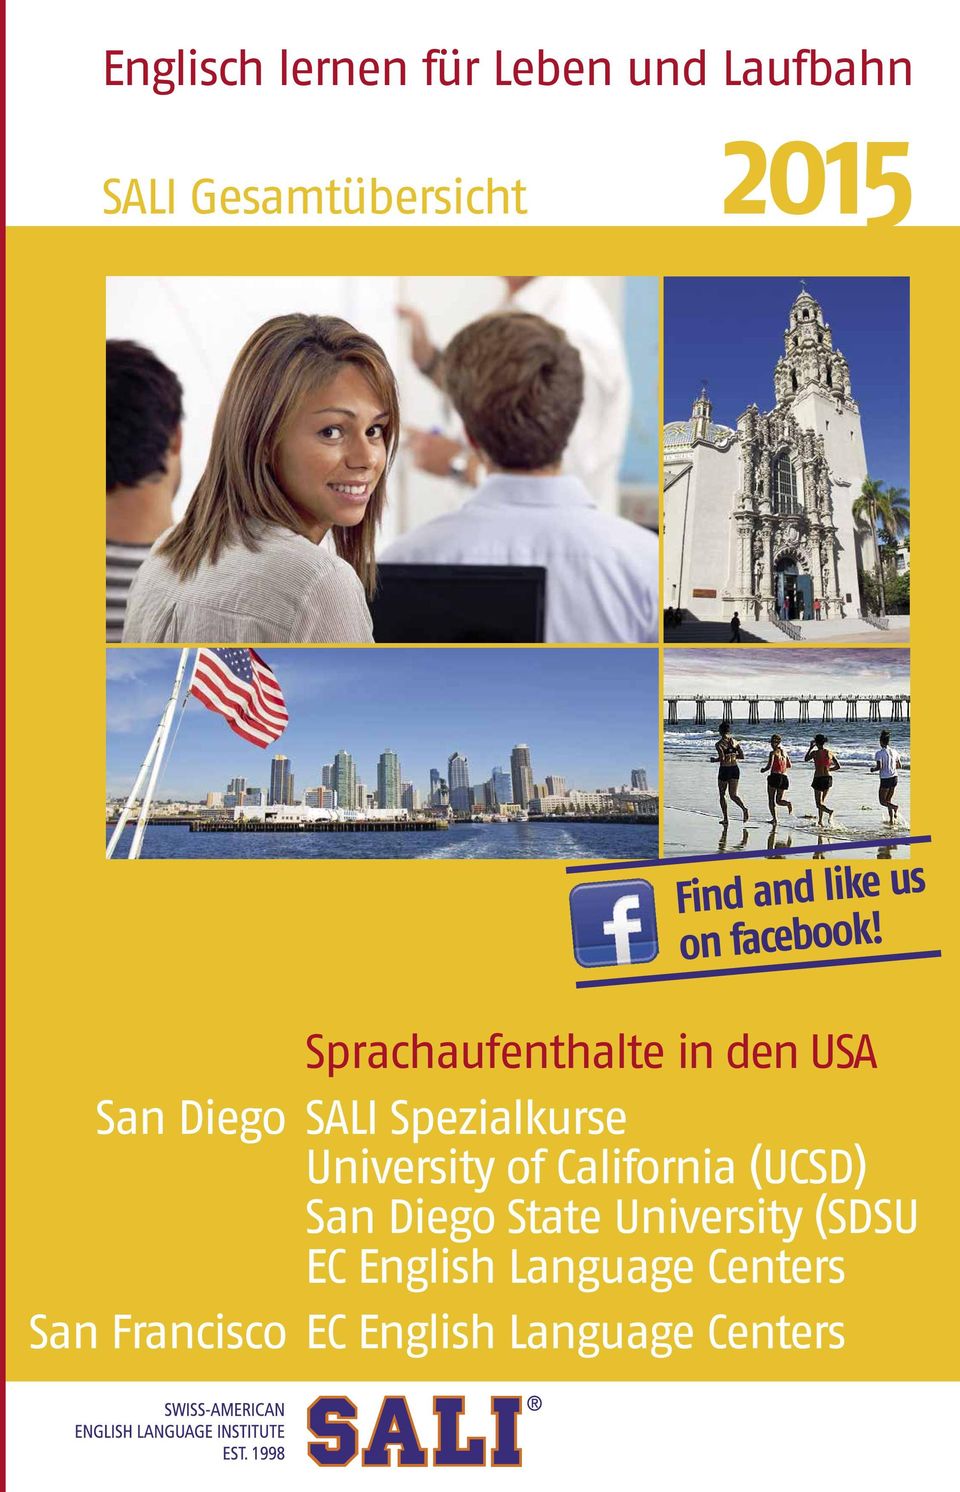 Sprachaufenthalte in den USA San Diego SALI Spezialkurse University of